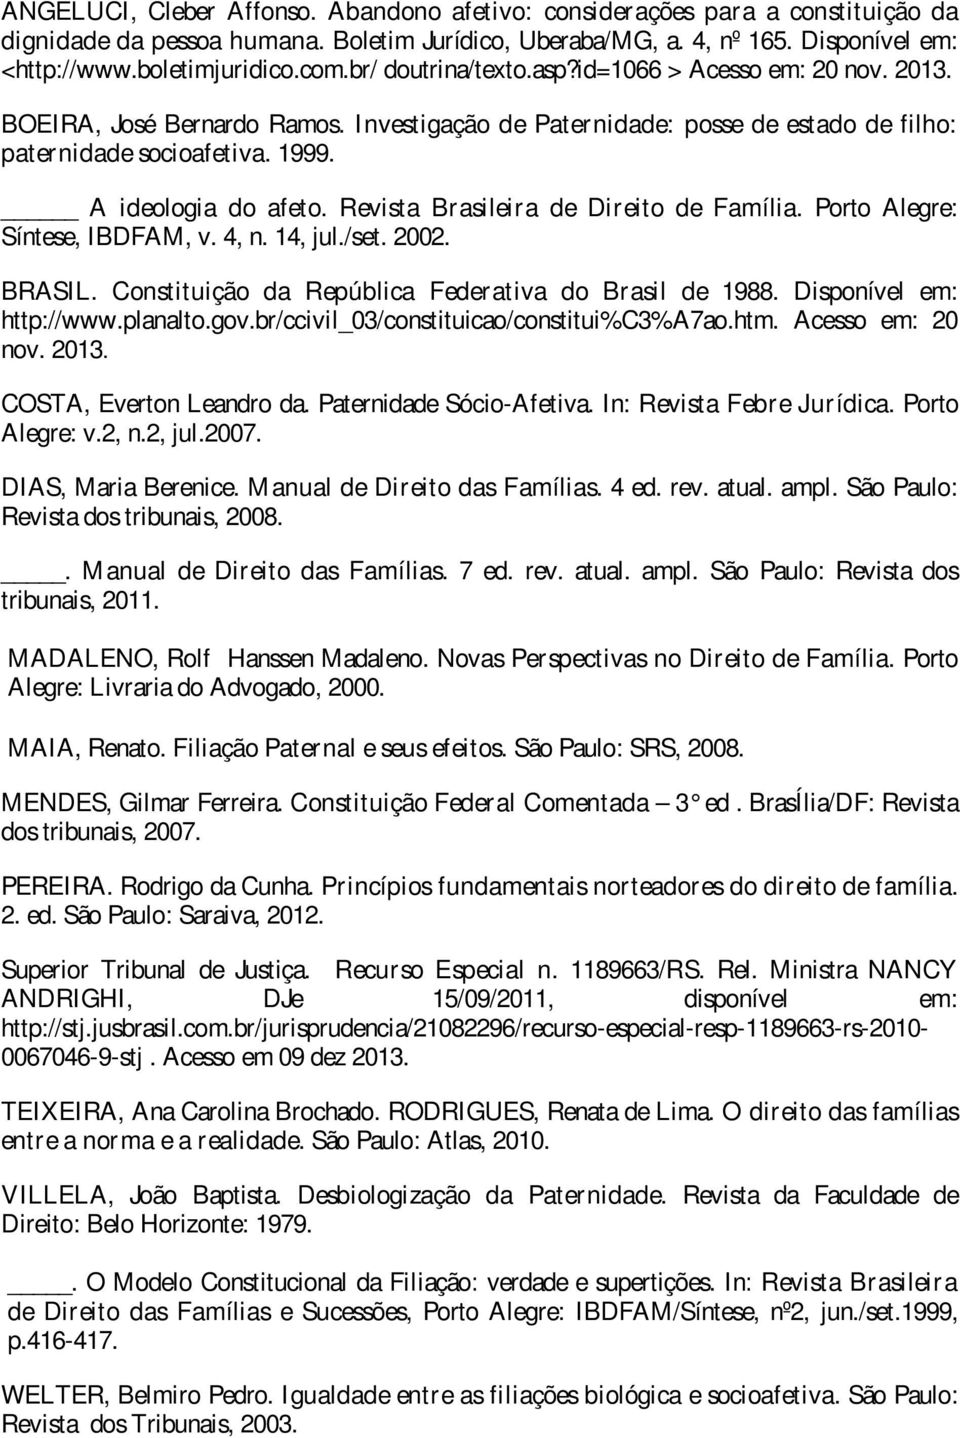 Revista Brasileira de Direito de Família. Porto Alegre: Síntese, IBDFAM, v. 4, n. 14, jul./set. 2002. BRASIL. Constituição da República Federativa do Brasil de 1988. Disponível em: http://www.